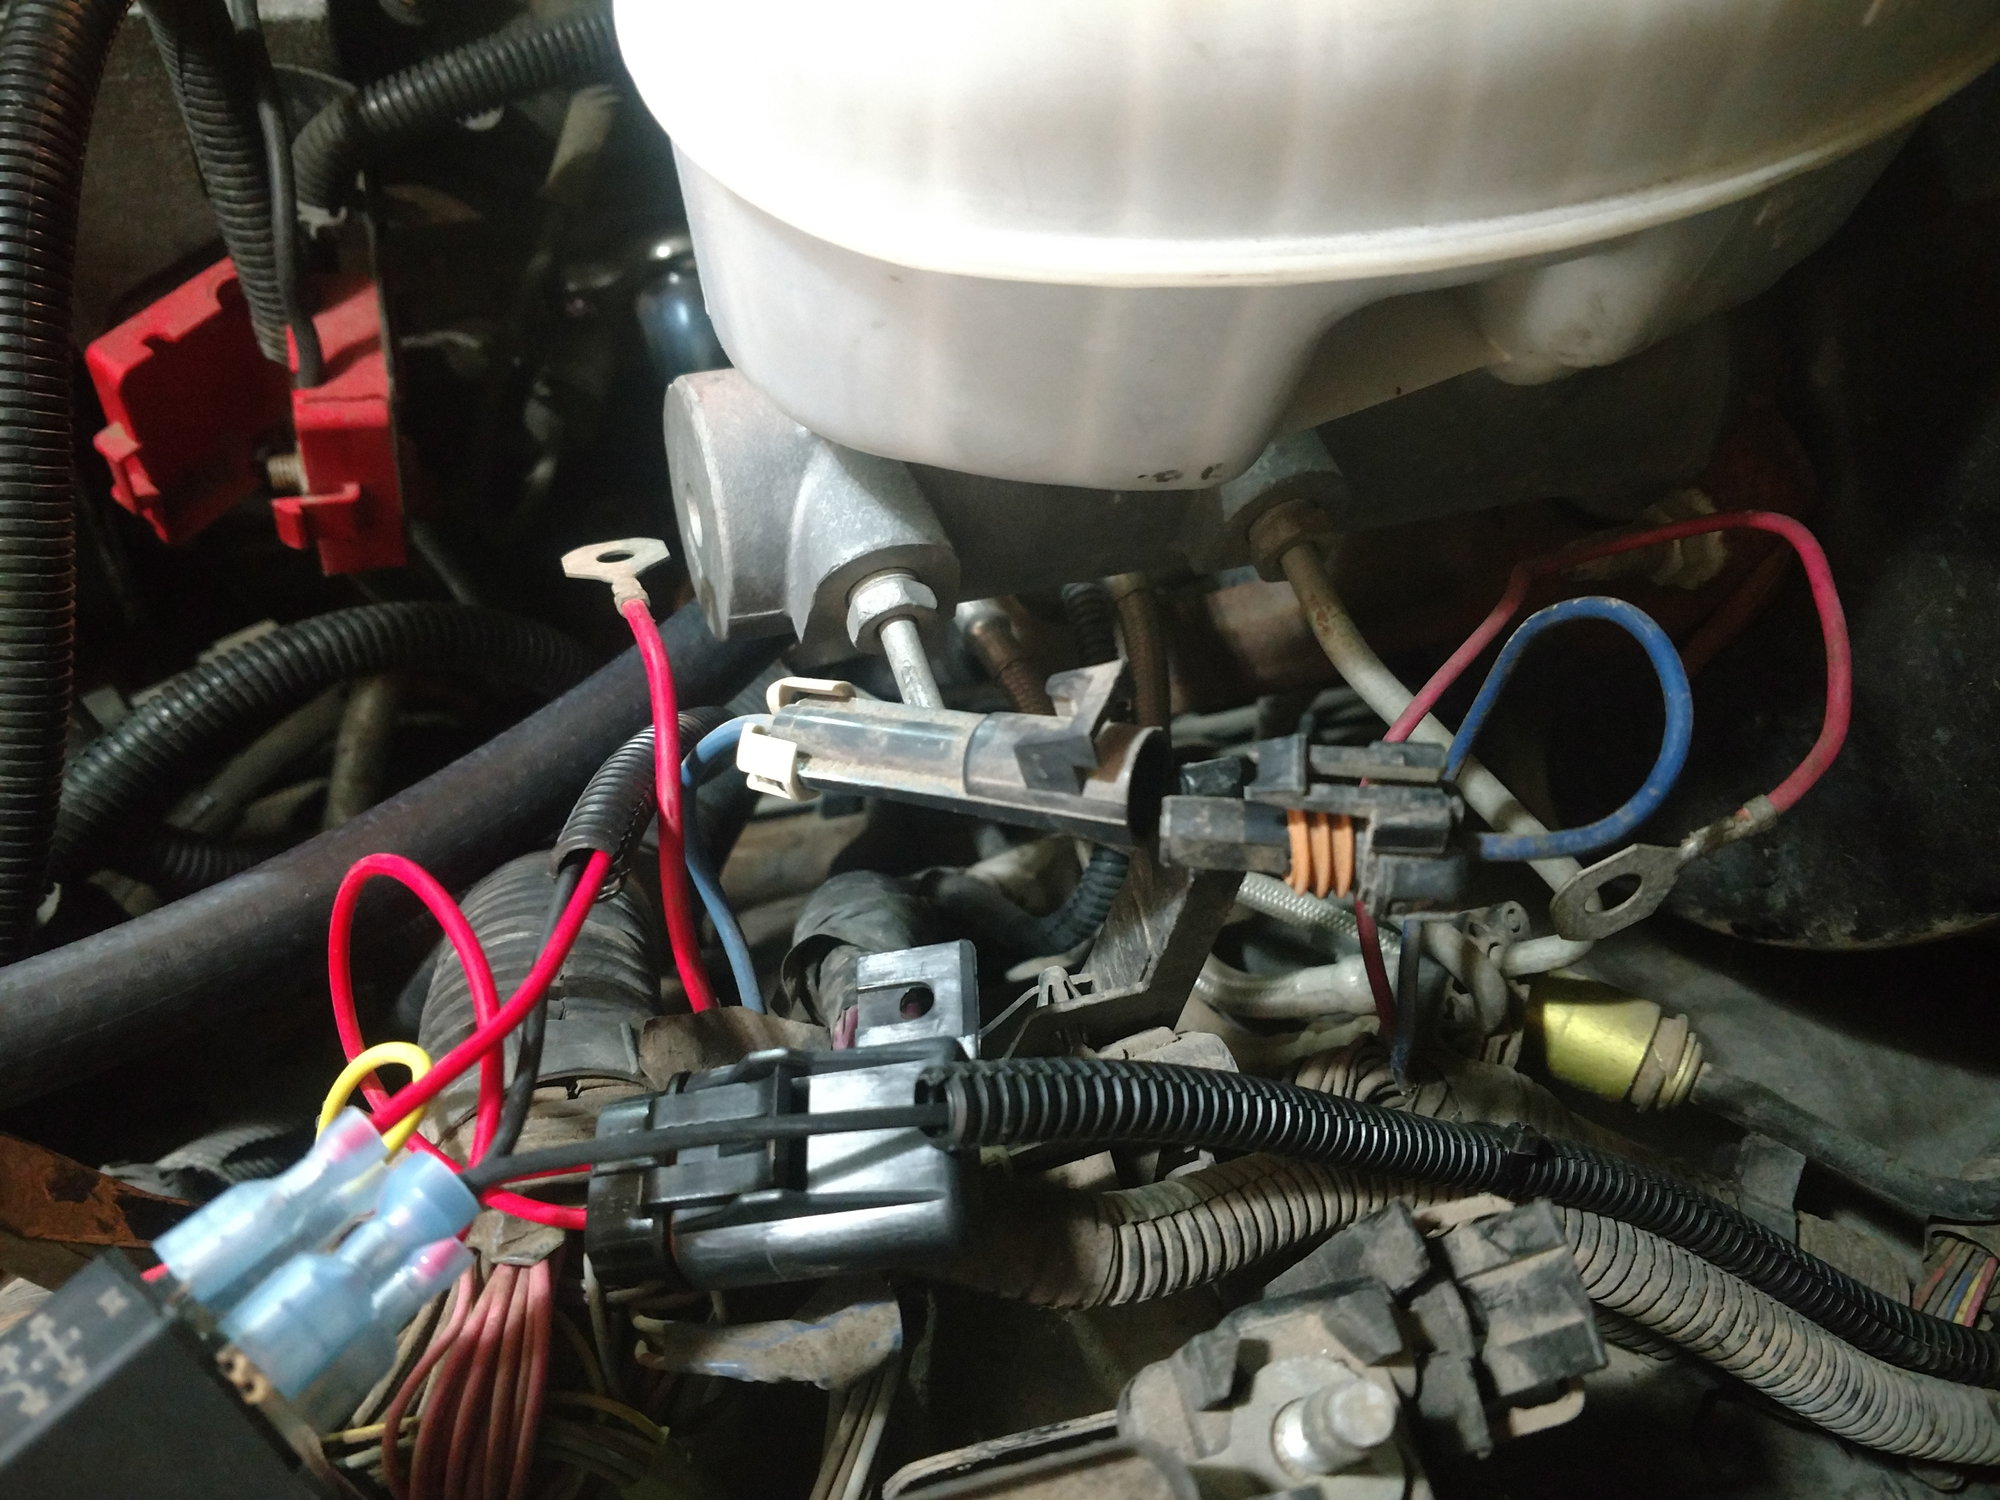 04 Silverado under hood wiring - PerformanceTrucks.net Forums Under Hood Fuse Box Chevy Silverado Removal